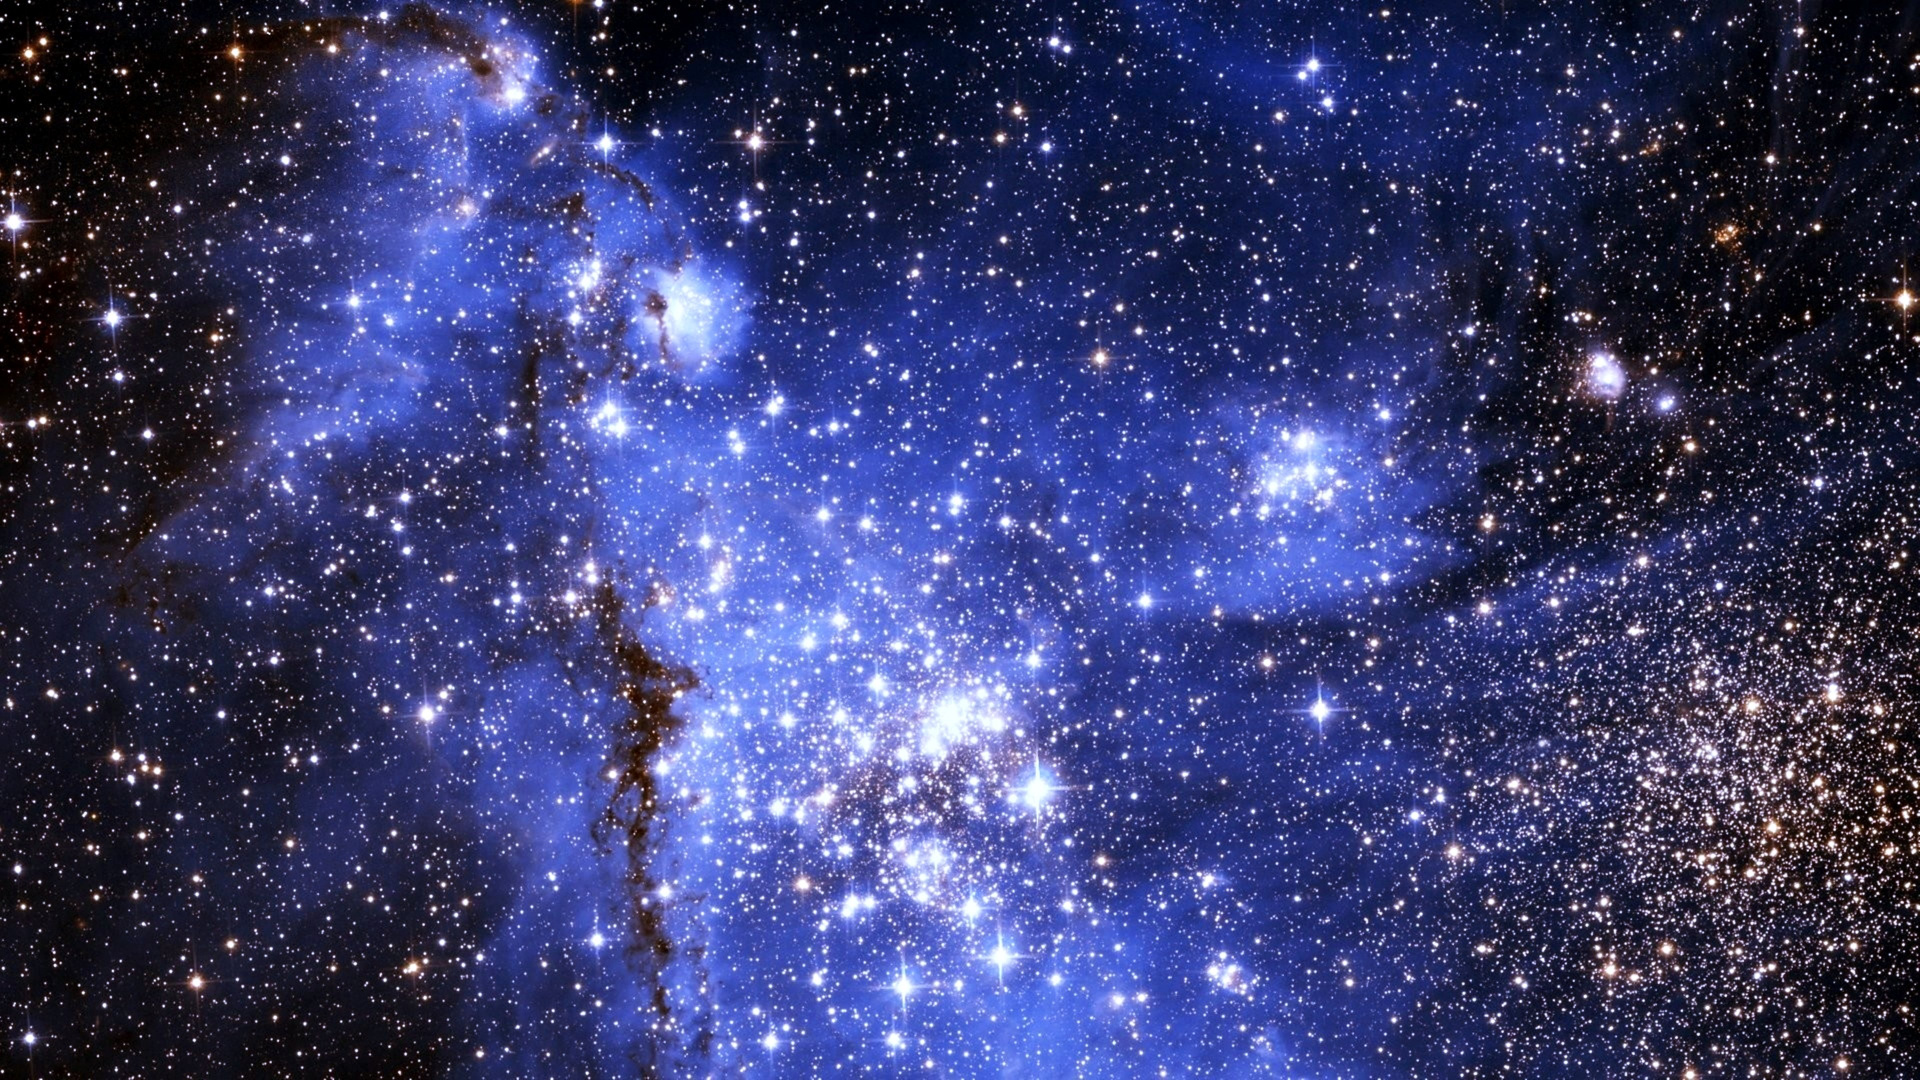 Blau-weiße Sternennacht. Wallpaper in 1920x1080 Resolution